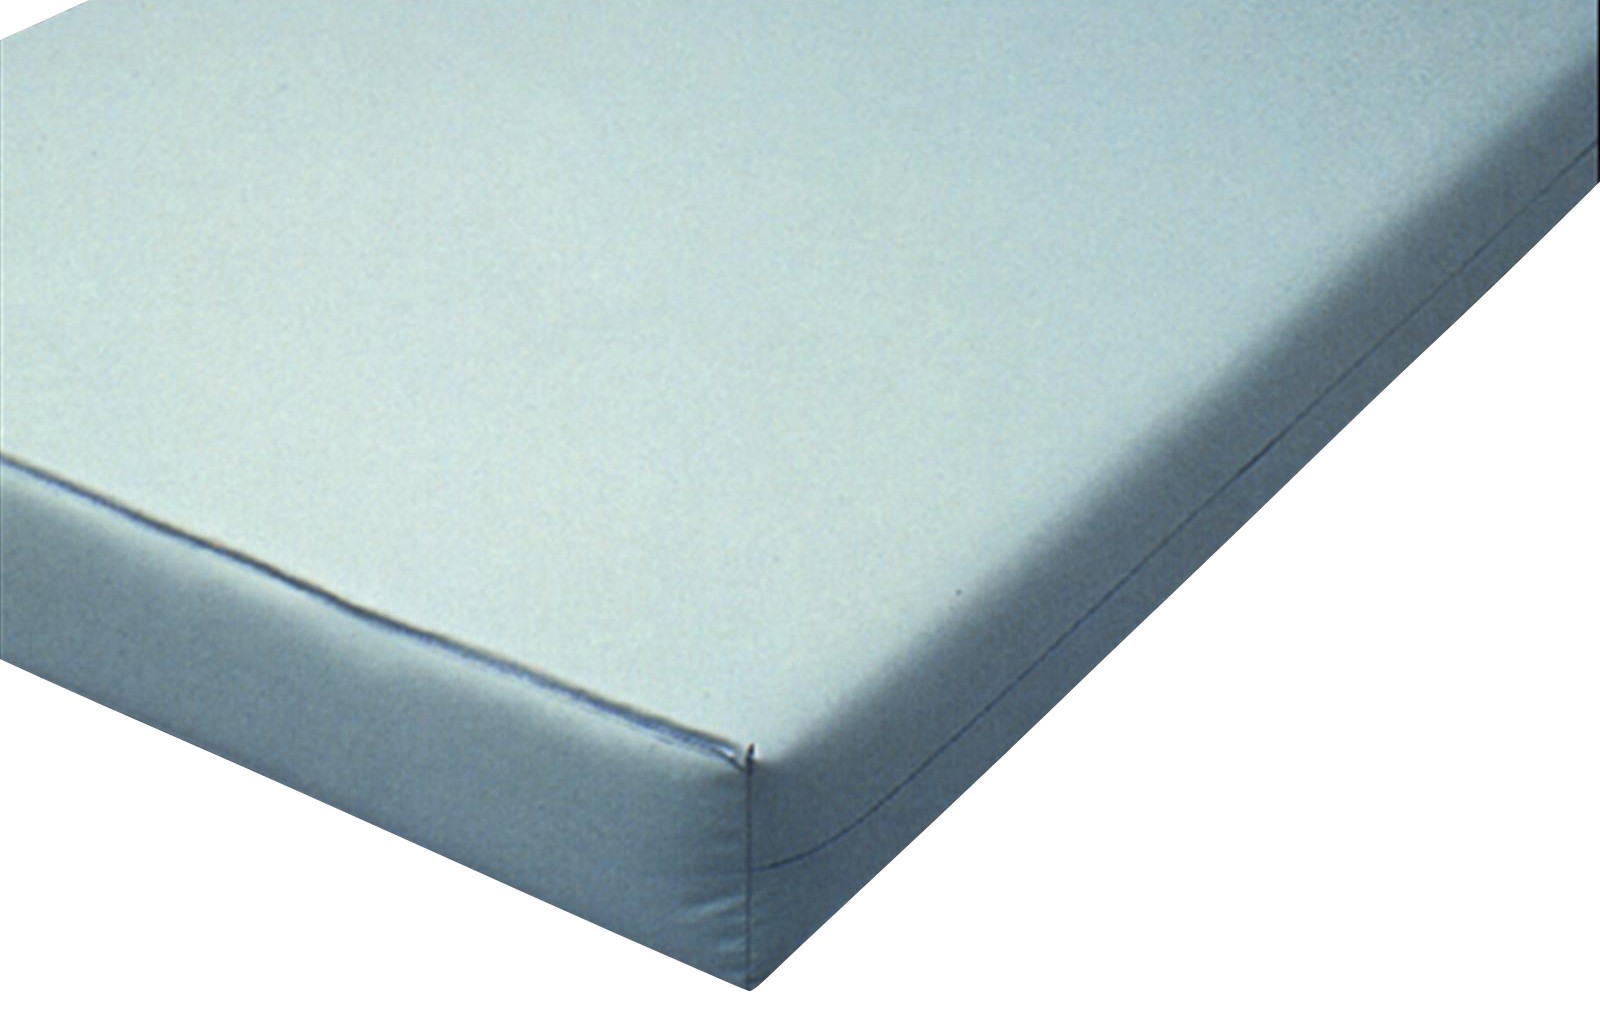 84 inch air mattress